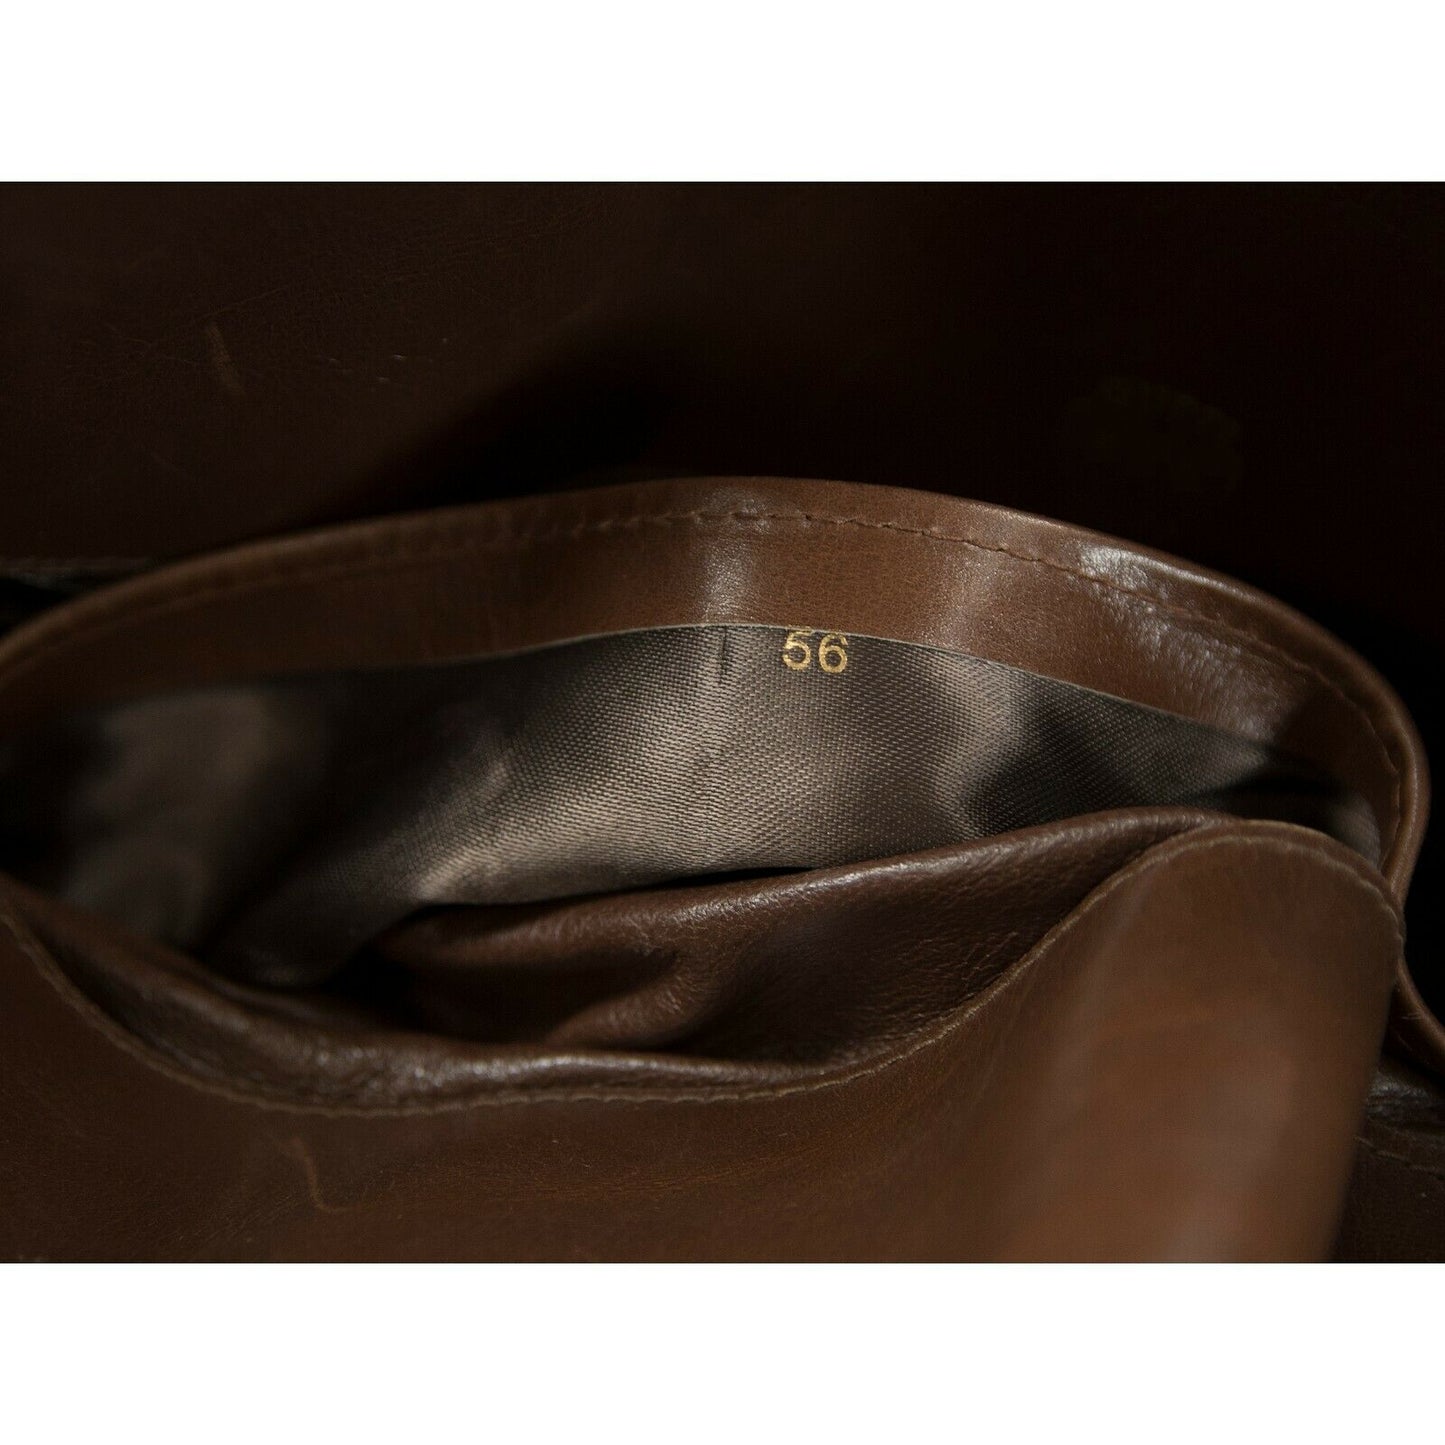 Gucci 1970s Vintage Cognac Suede Caramel Leather Flat Logo Lock Shoulder Bag